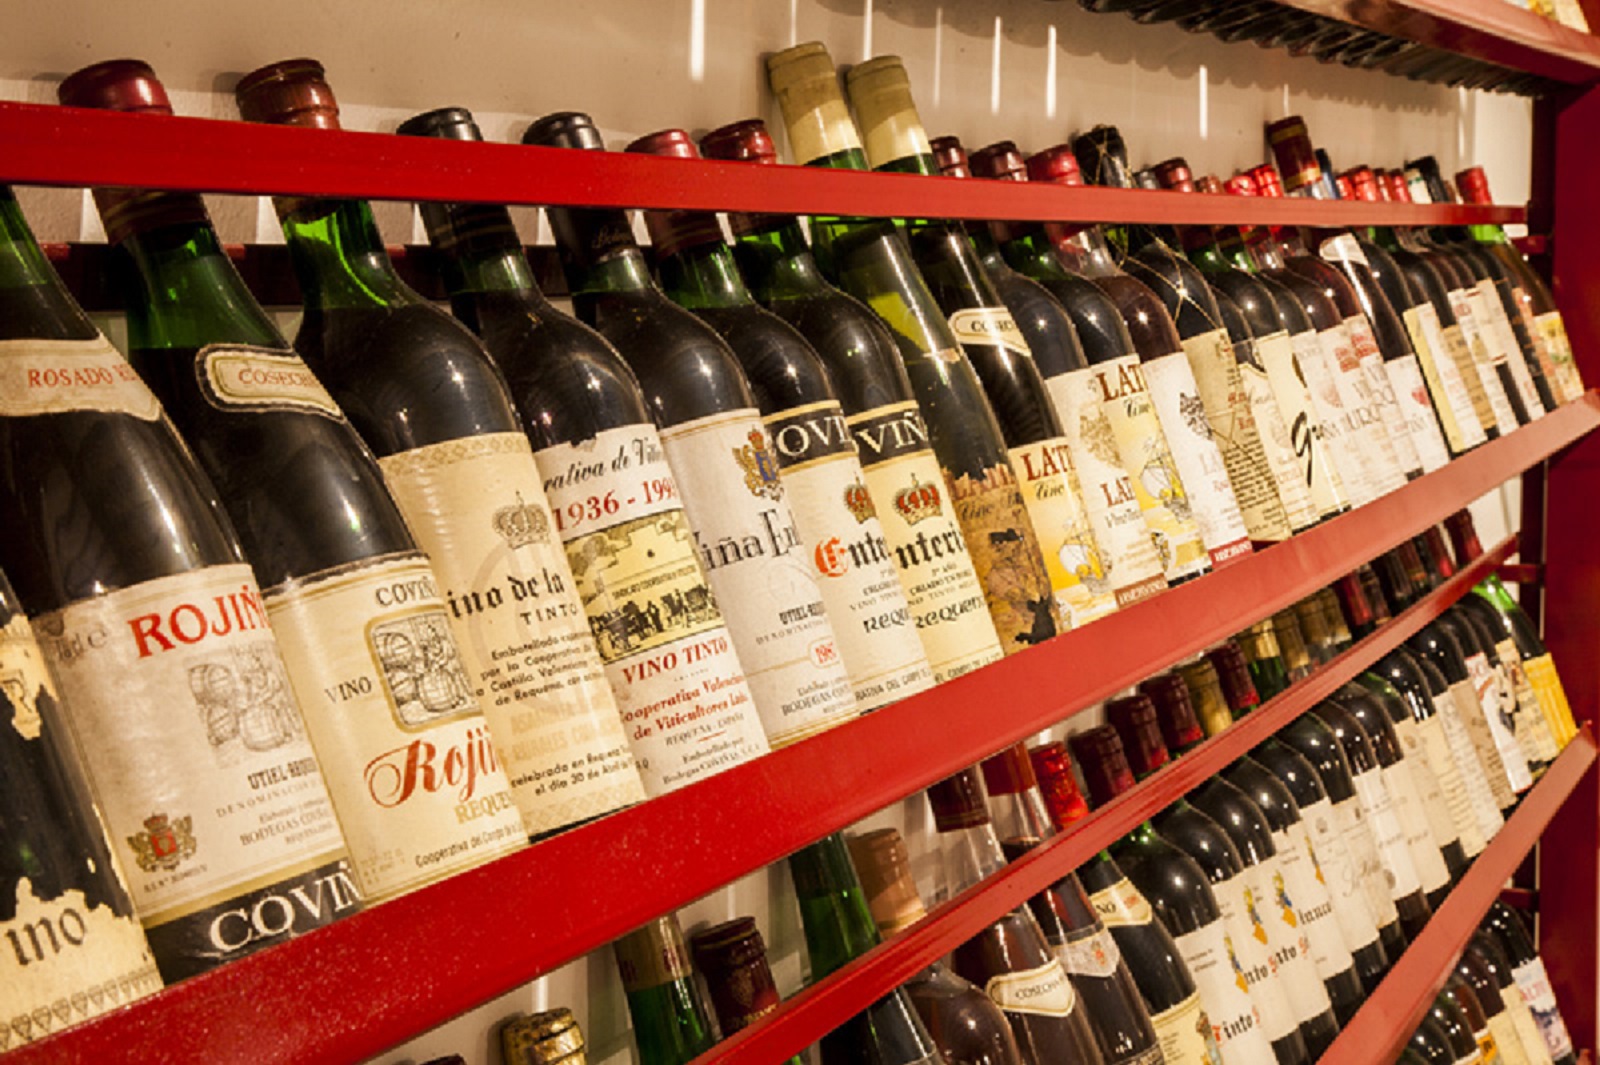 La DO Utiel-Requena vende 27,3 millones de botellas de vino en 2015, un 5,5% más que el año anterior